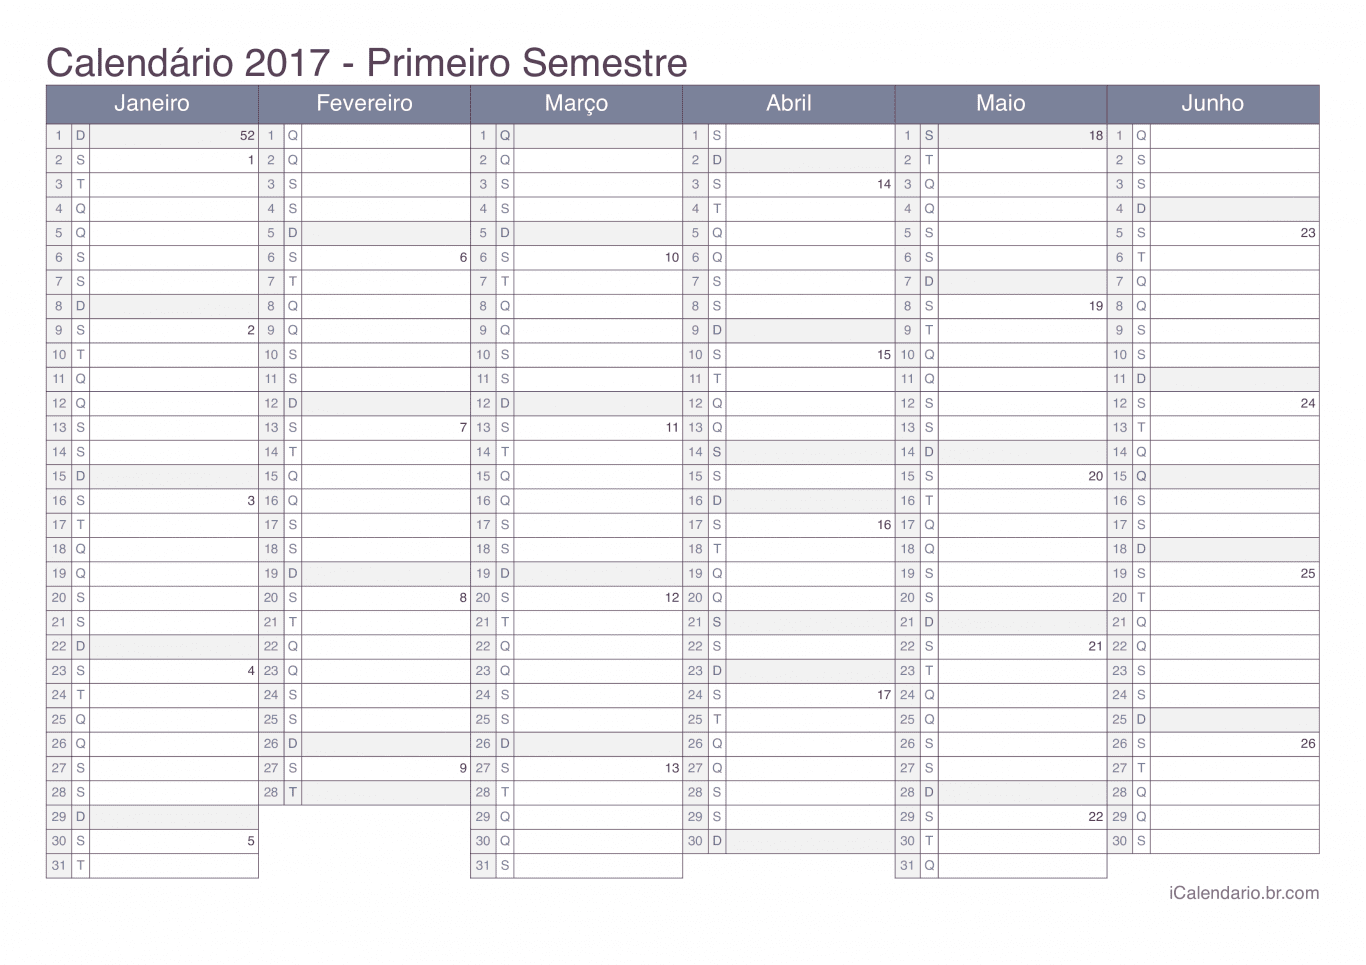 Calendário por semestre com números da semana 2017 - Office